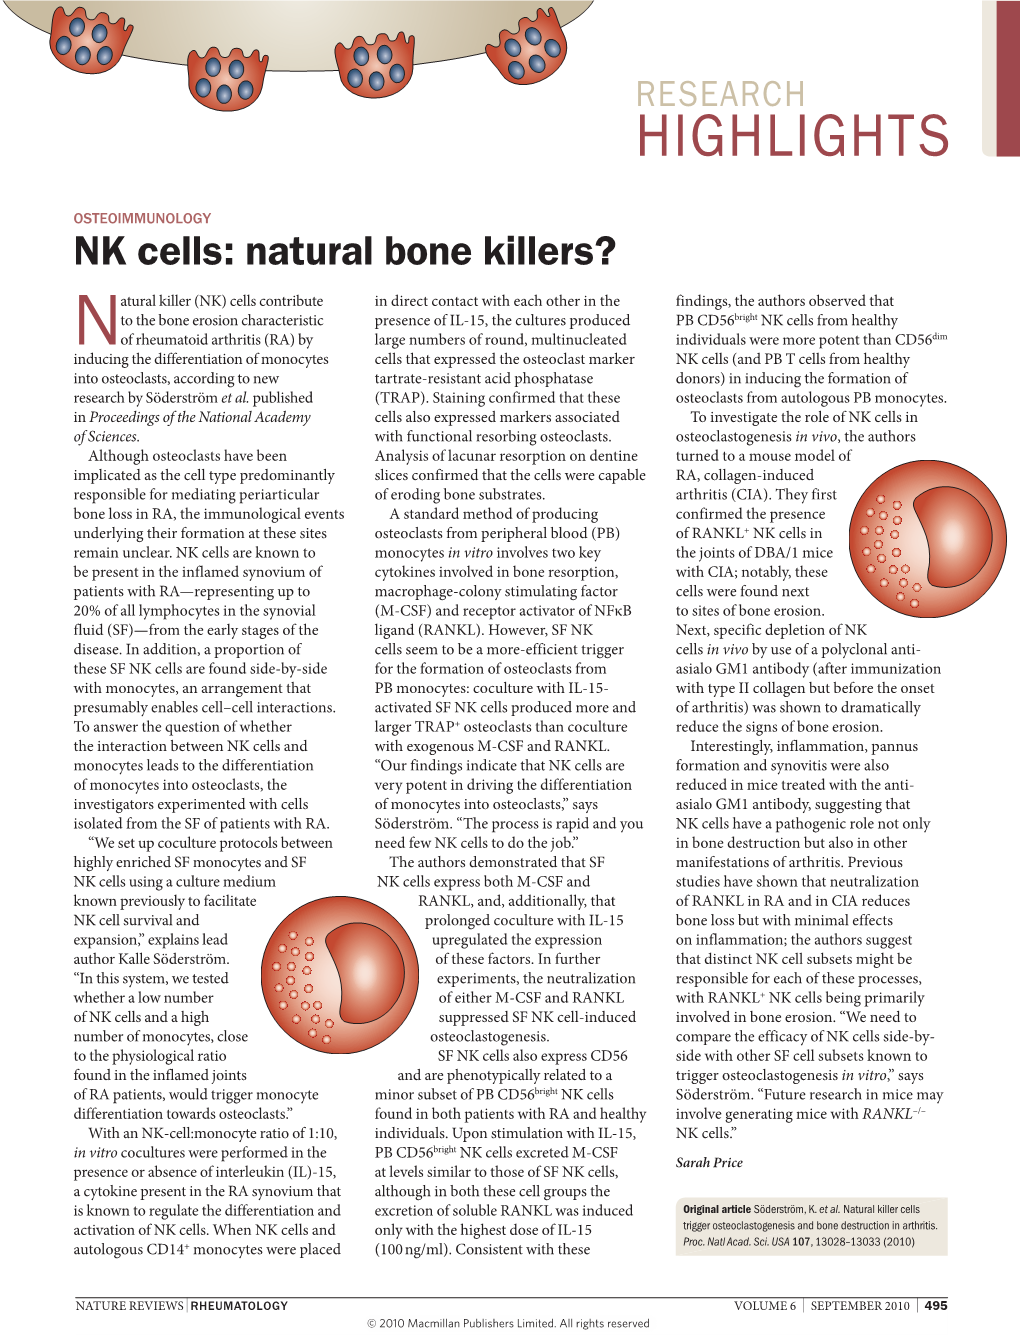 NK Cells: Natural Bone Killers?